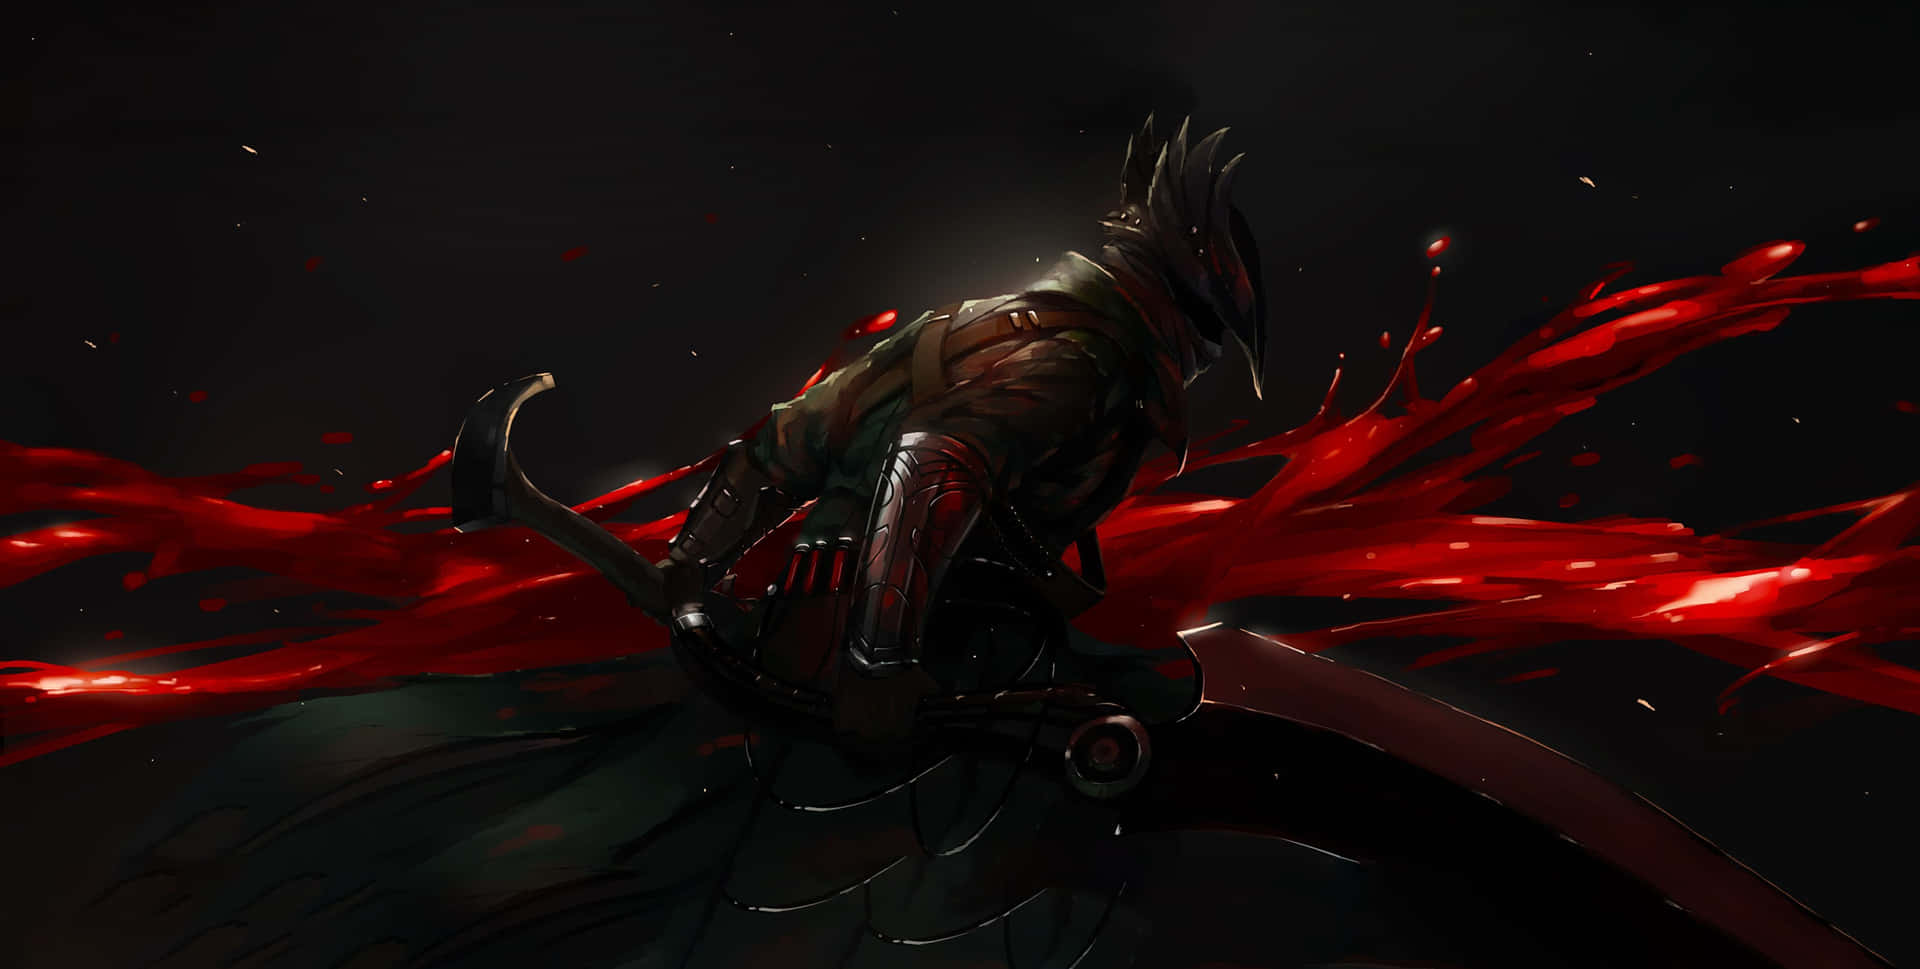 Digital Fan Art Of The Hunter Bloodborne 4K HD Wallpaper